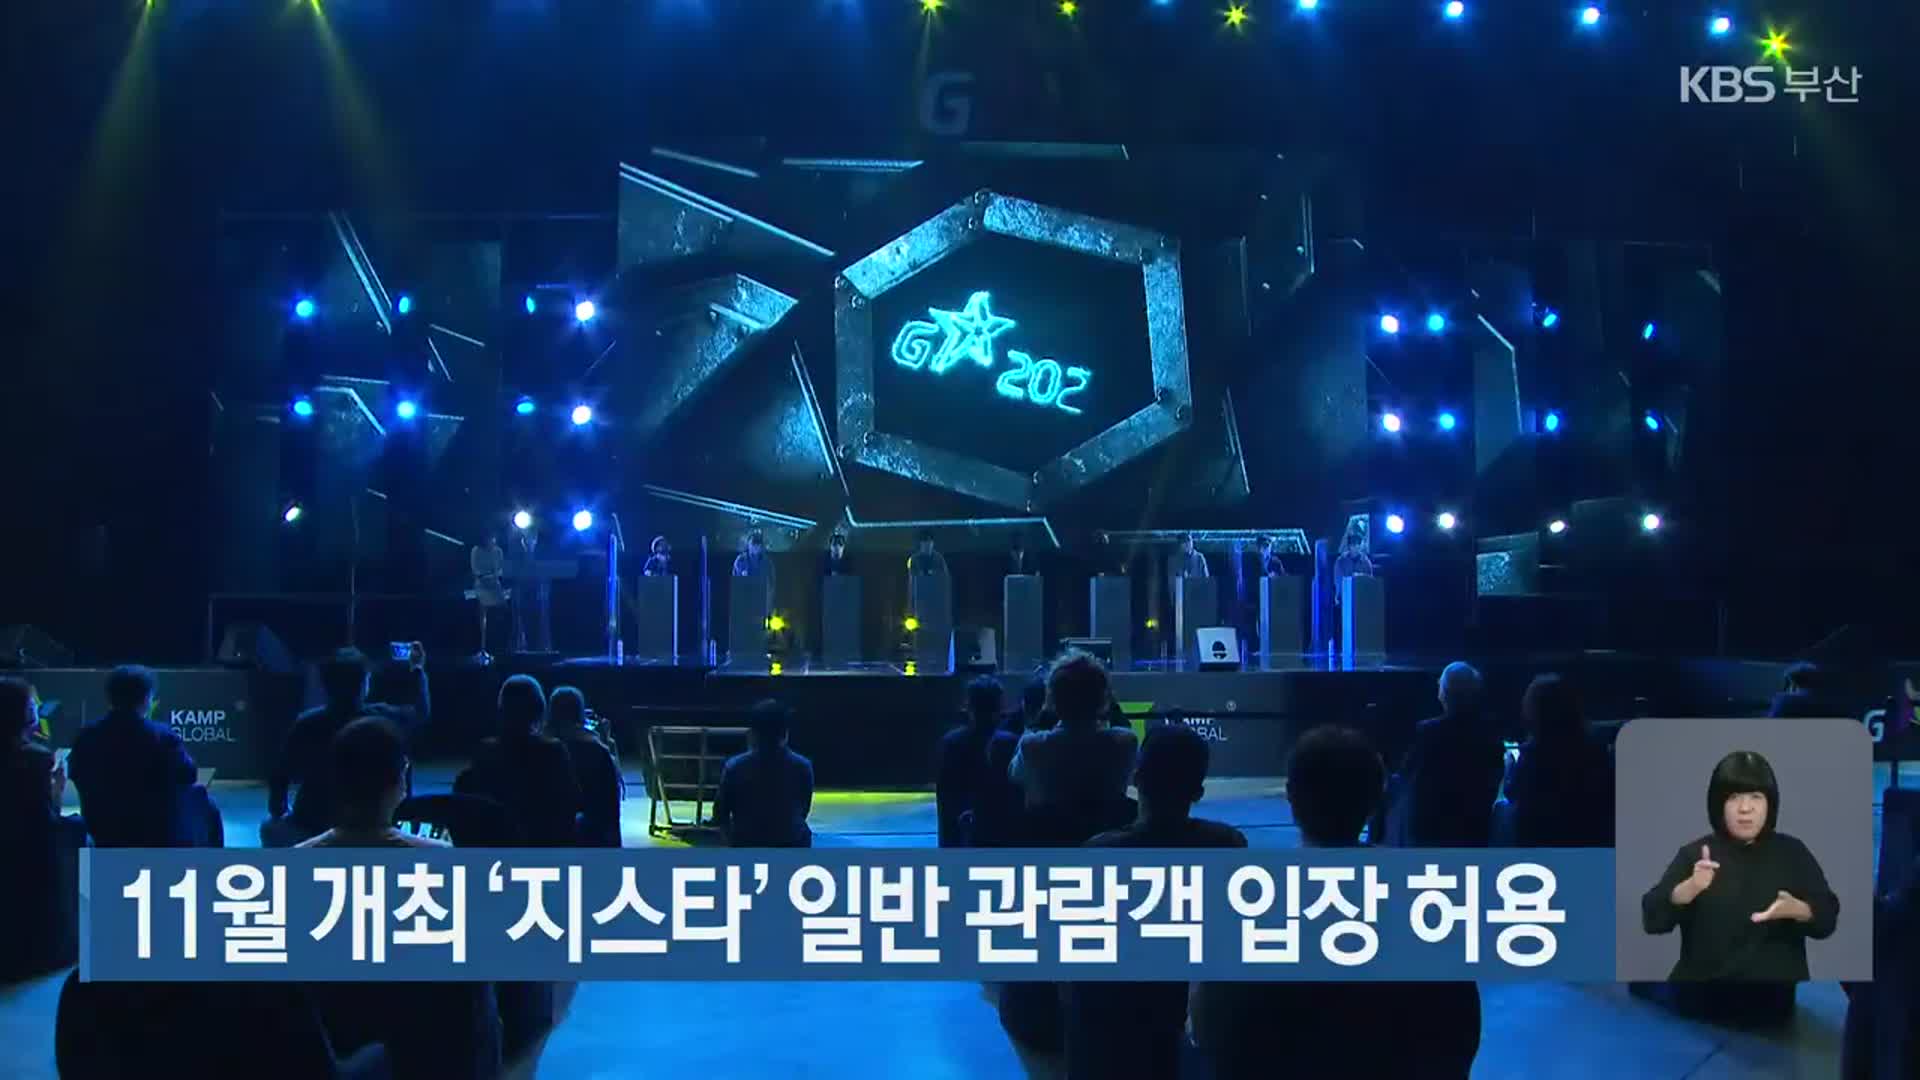 11월 개최 ‘지스타’ 일반 관람객 입장 허용